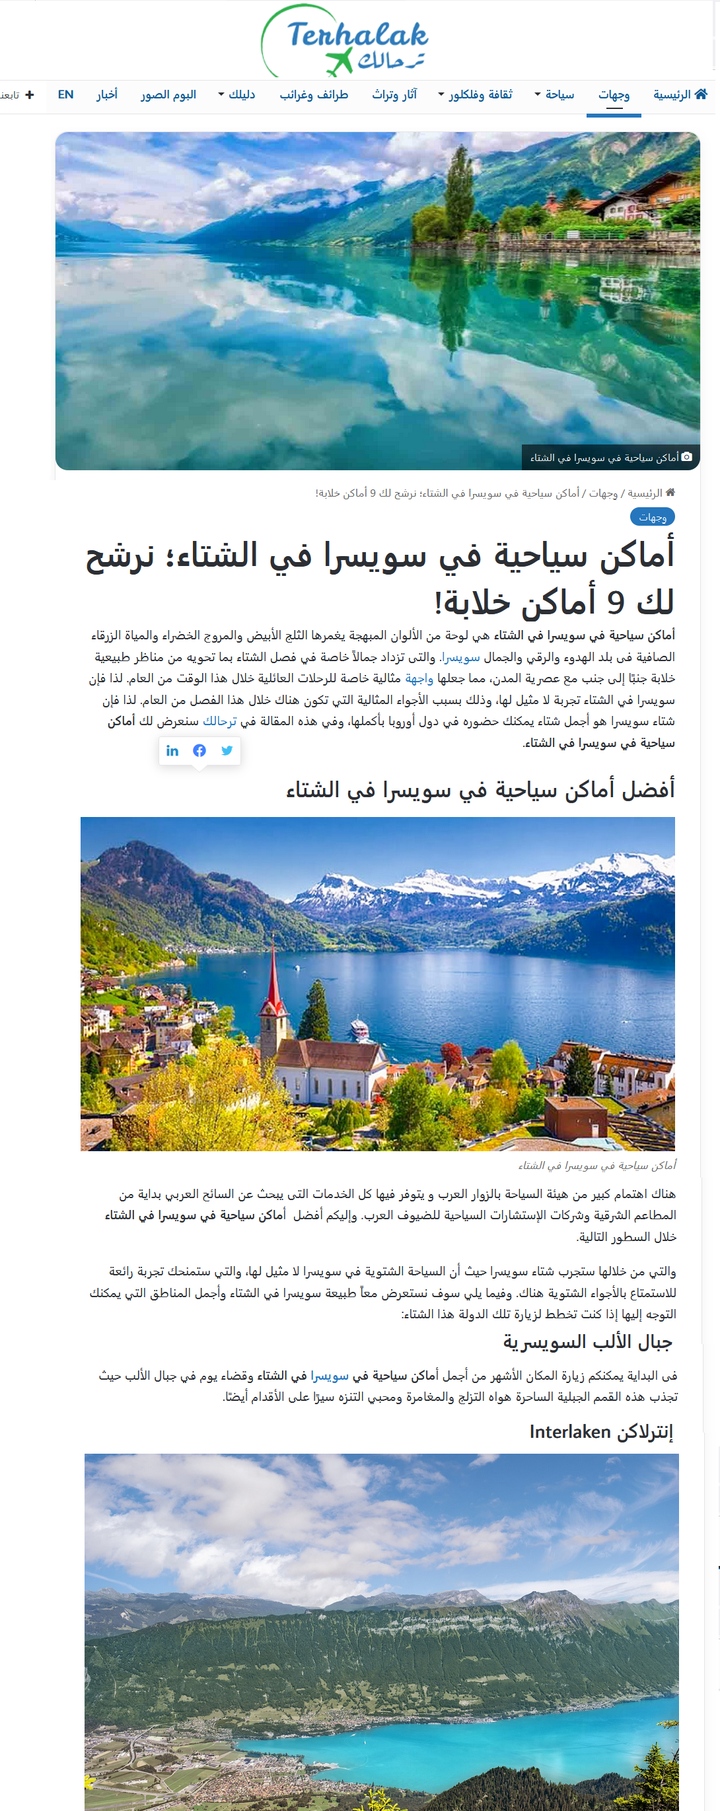 تقرير عن الأماكن السياحية في سويسرا لموقع ترحالك السياحي